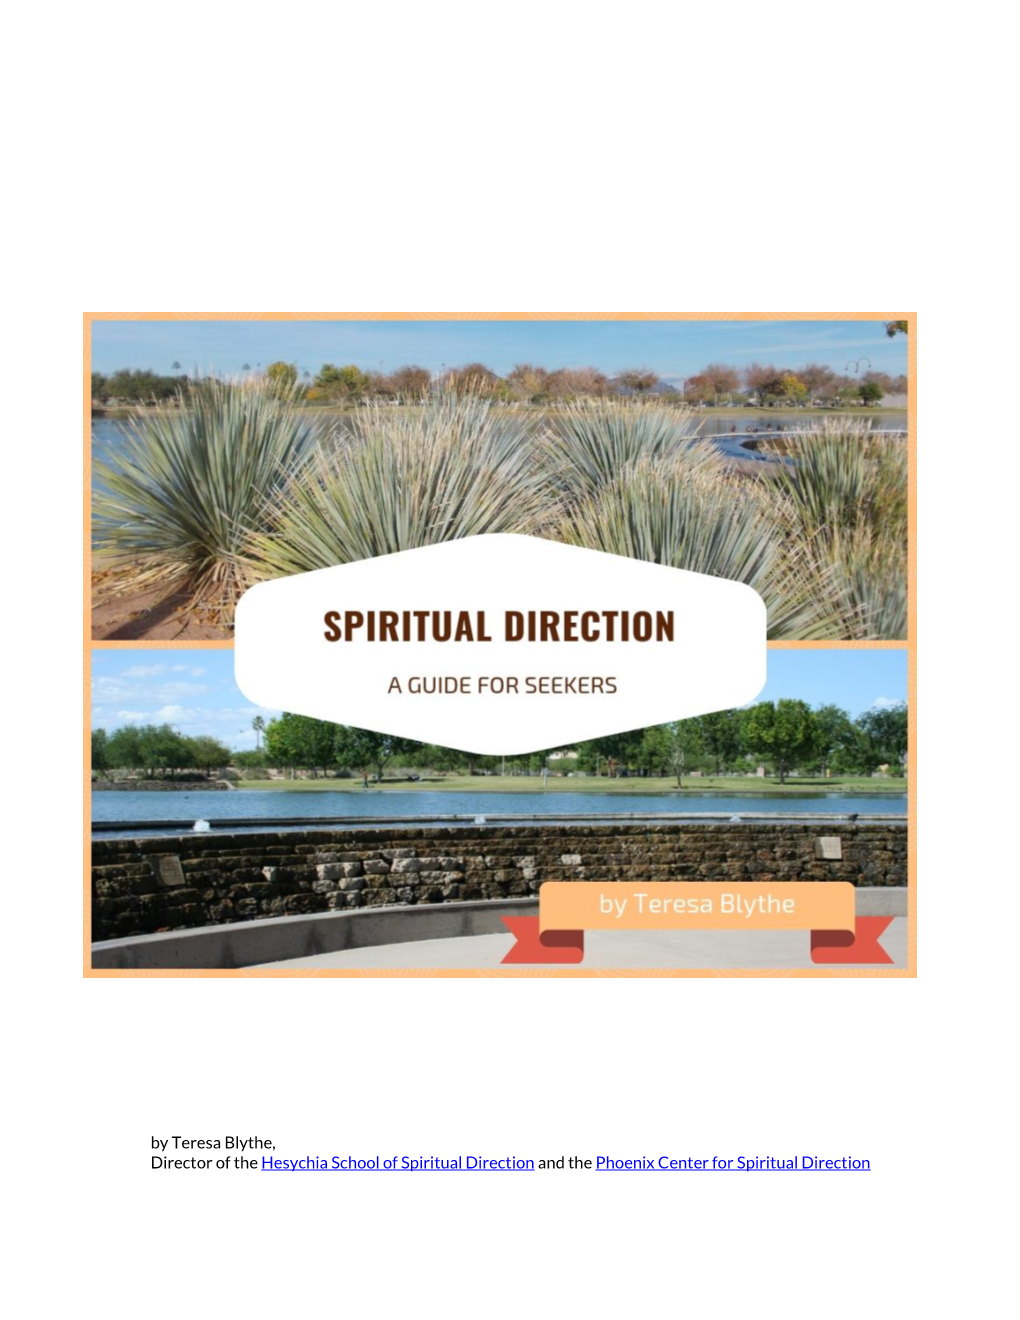 Spiritual Direction with Teresa Blythe